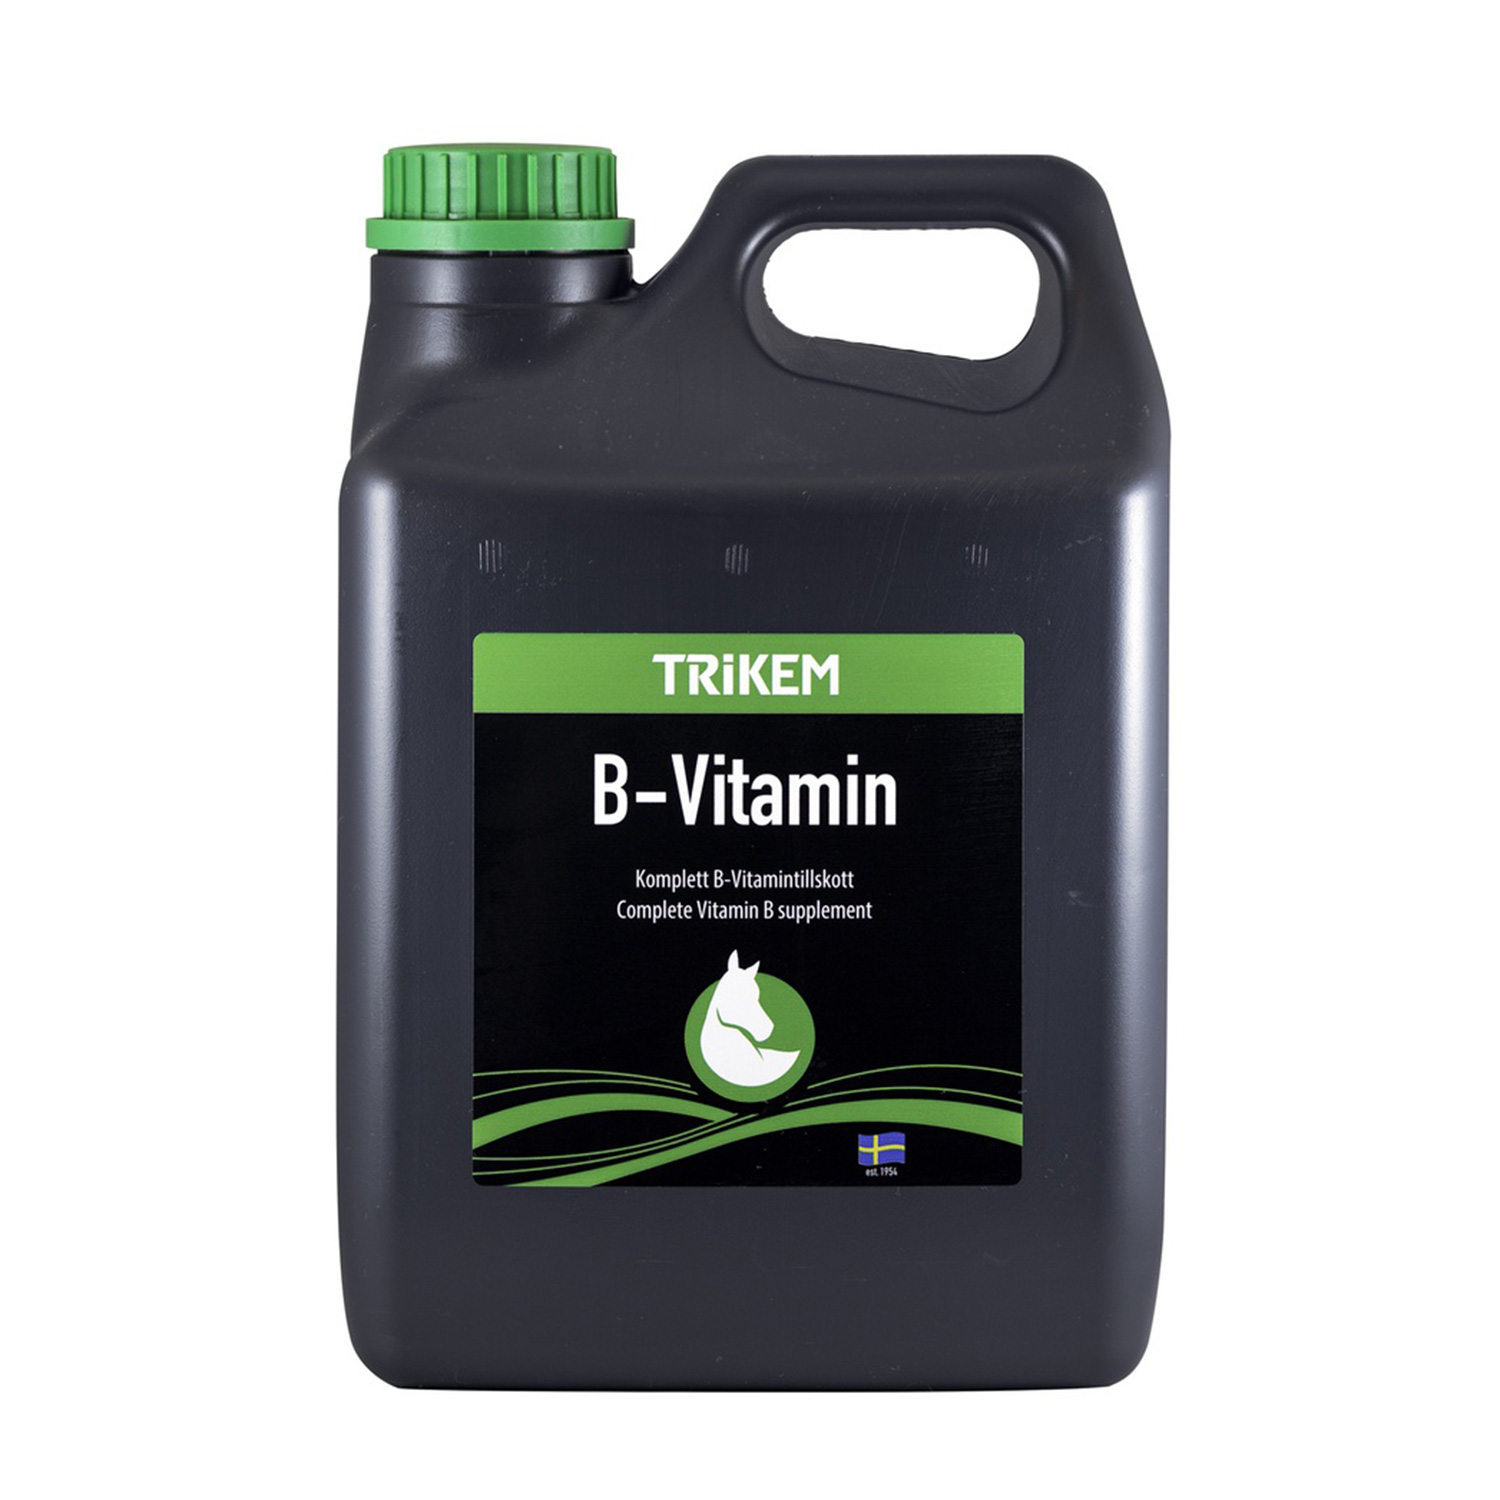 Vimital b-vitamin 2,5 l